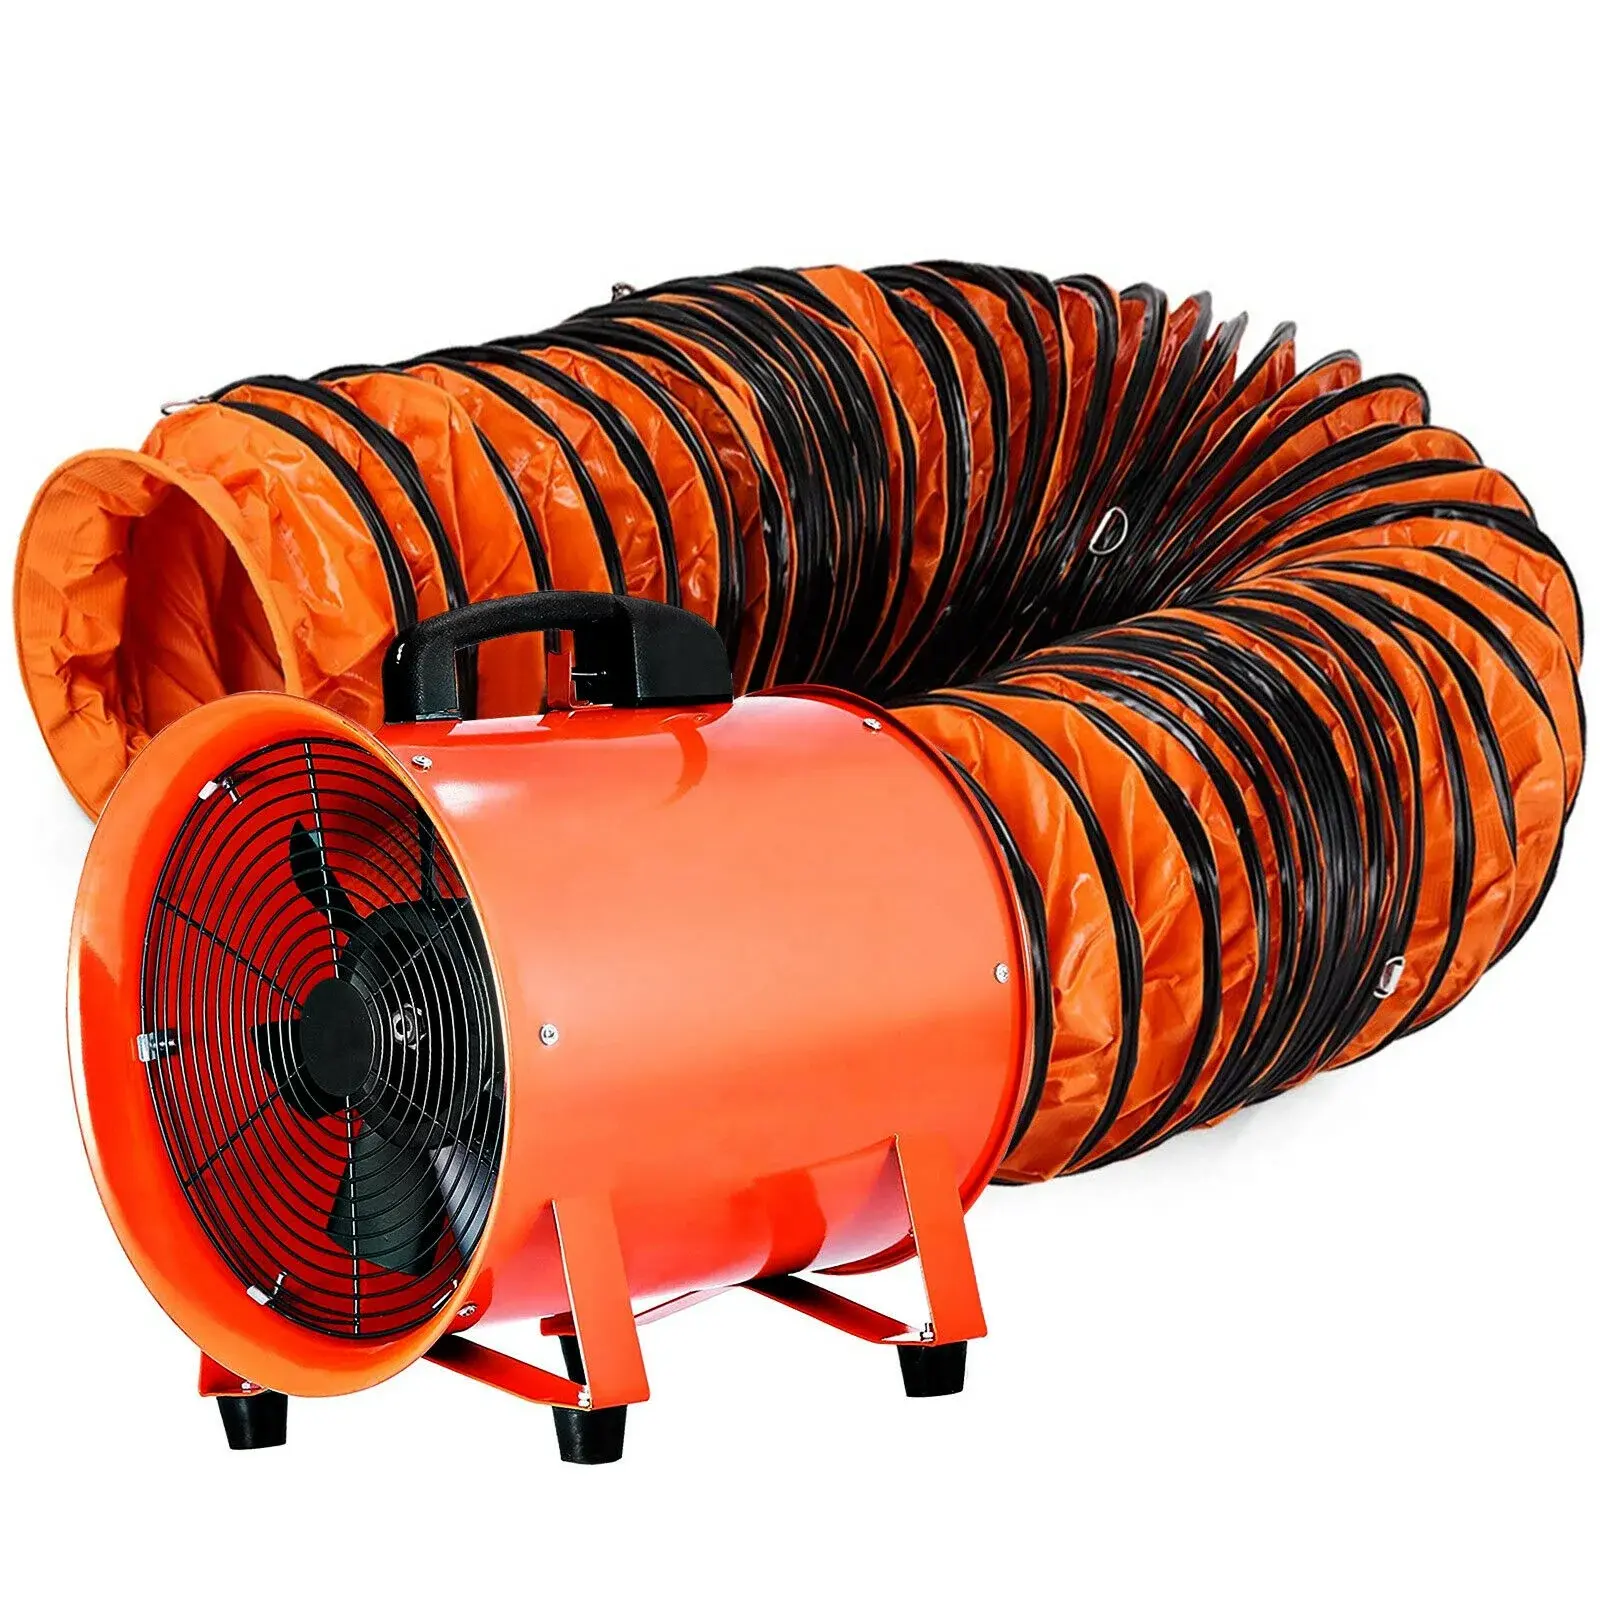 Ventilador de utilidad de alta velocidad de 300mm, ventilador portátil, ventilador